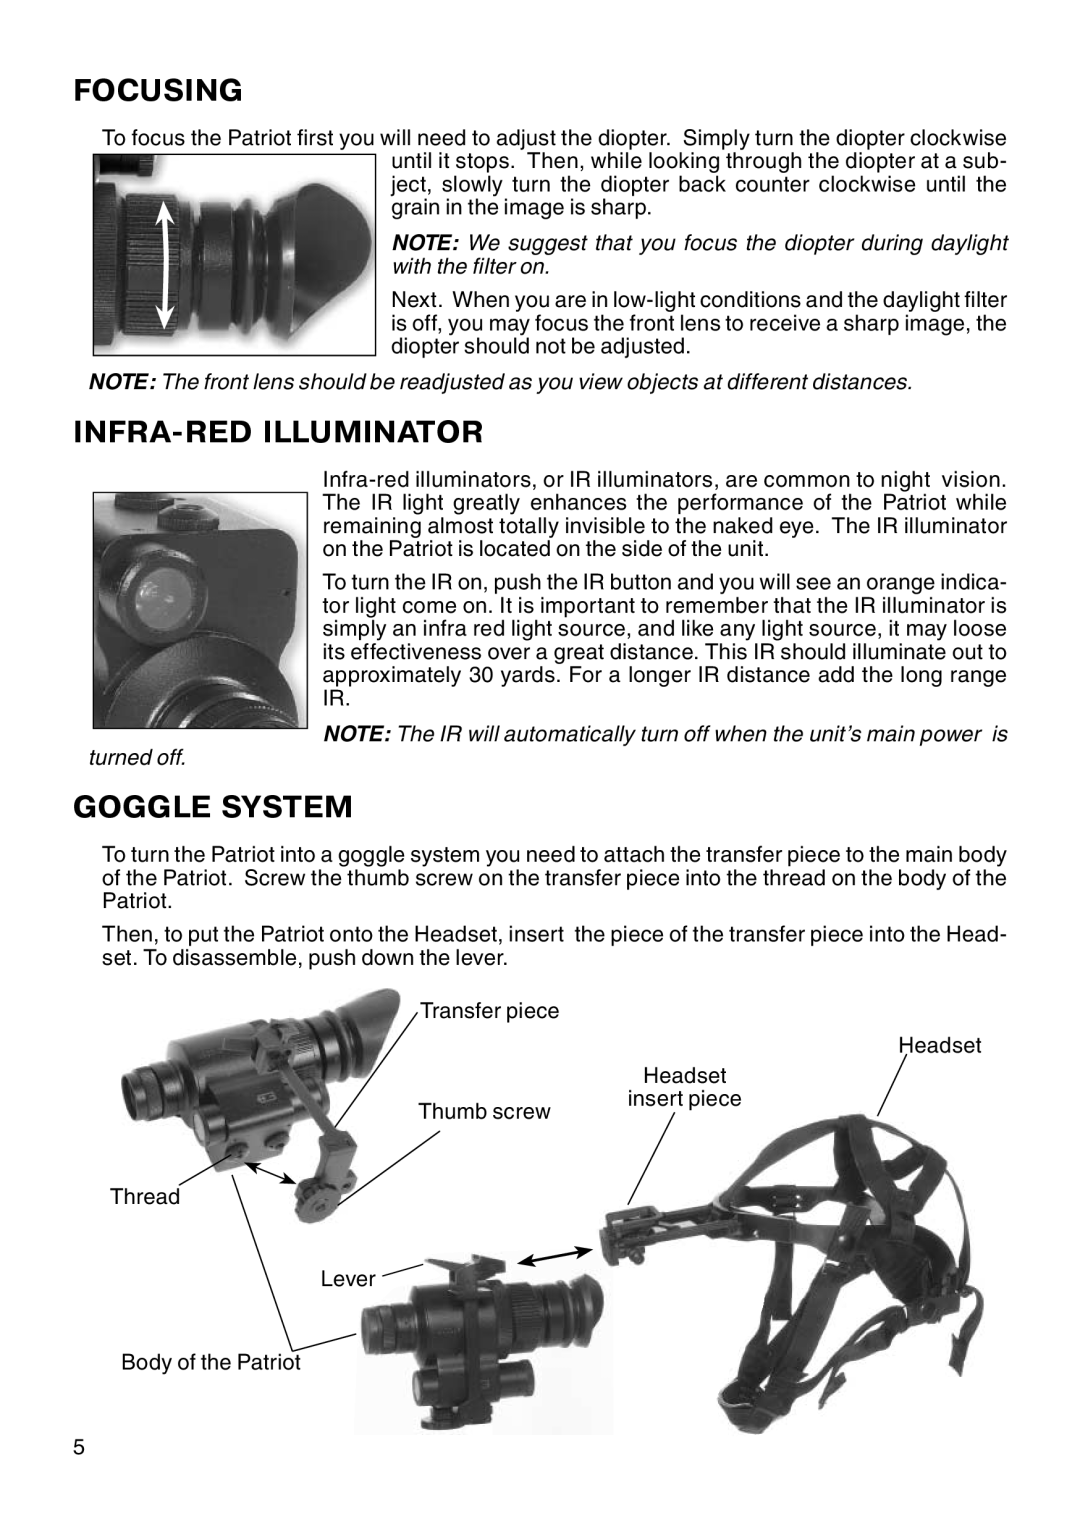 ATN Night Patriot manual Focusing, Infra-Redilluminator, Goggle System 